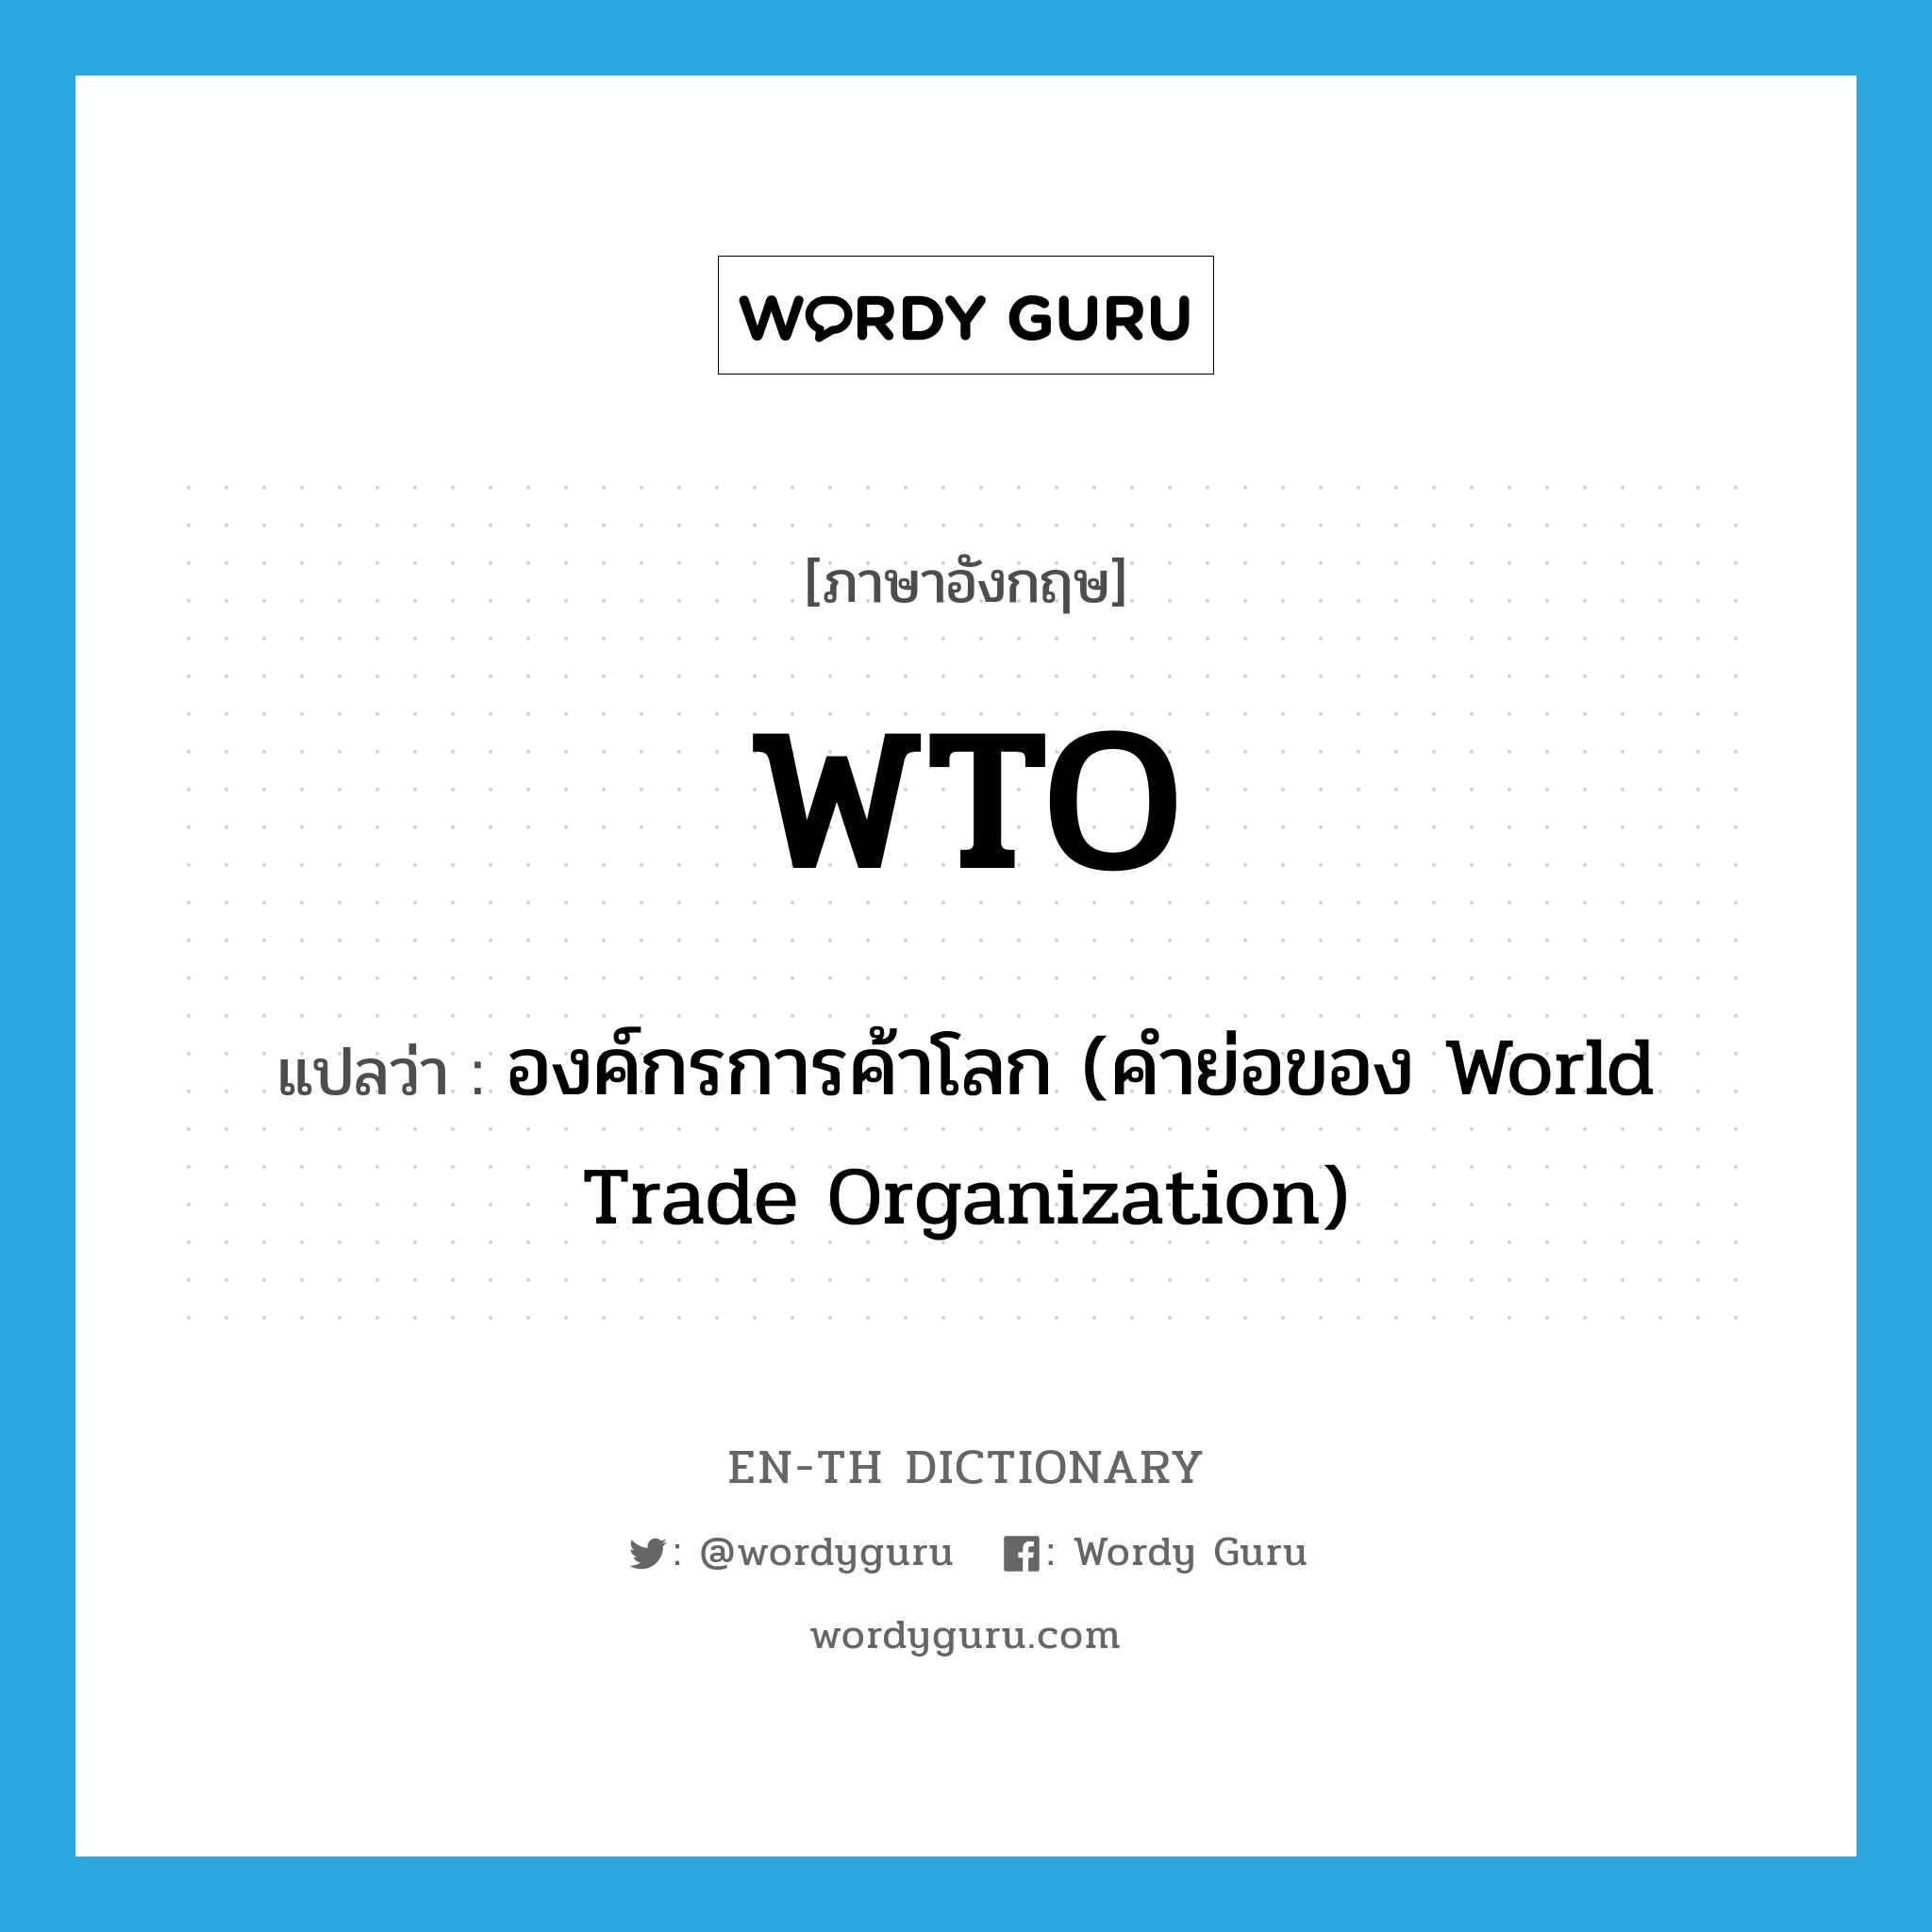 องค์กรการค้าโลก (คำย่อของ World Trade Organization) ภาษาอังกฤษ?, คำศัพท์ภาษาอังกฤษ องค์กรการค้าโลก (คำย่อของ World Trade Organization) แปลว่า WTO ประเภท ABBR หมวด ABBR